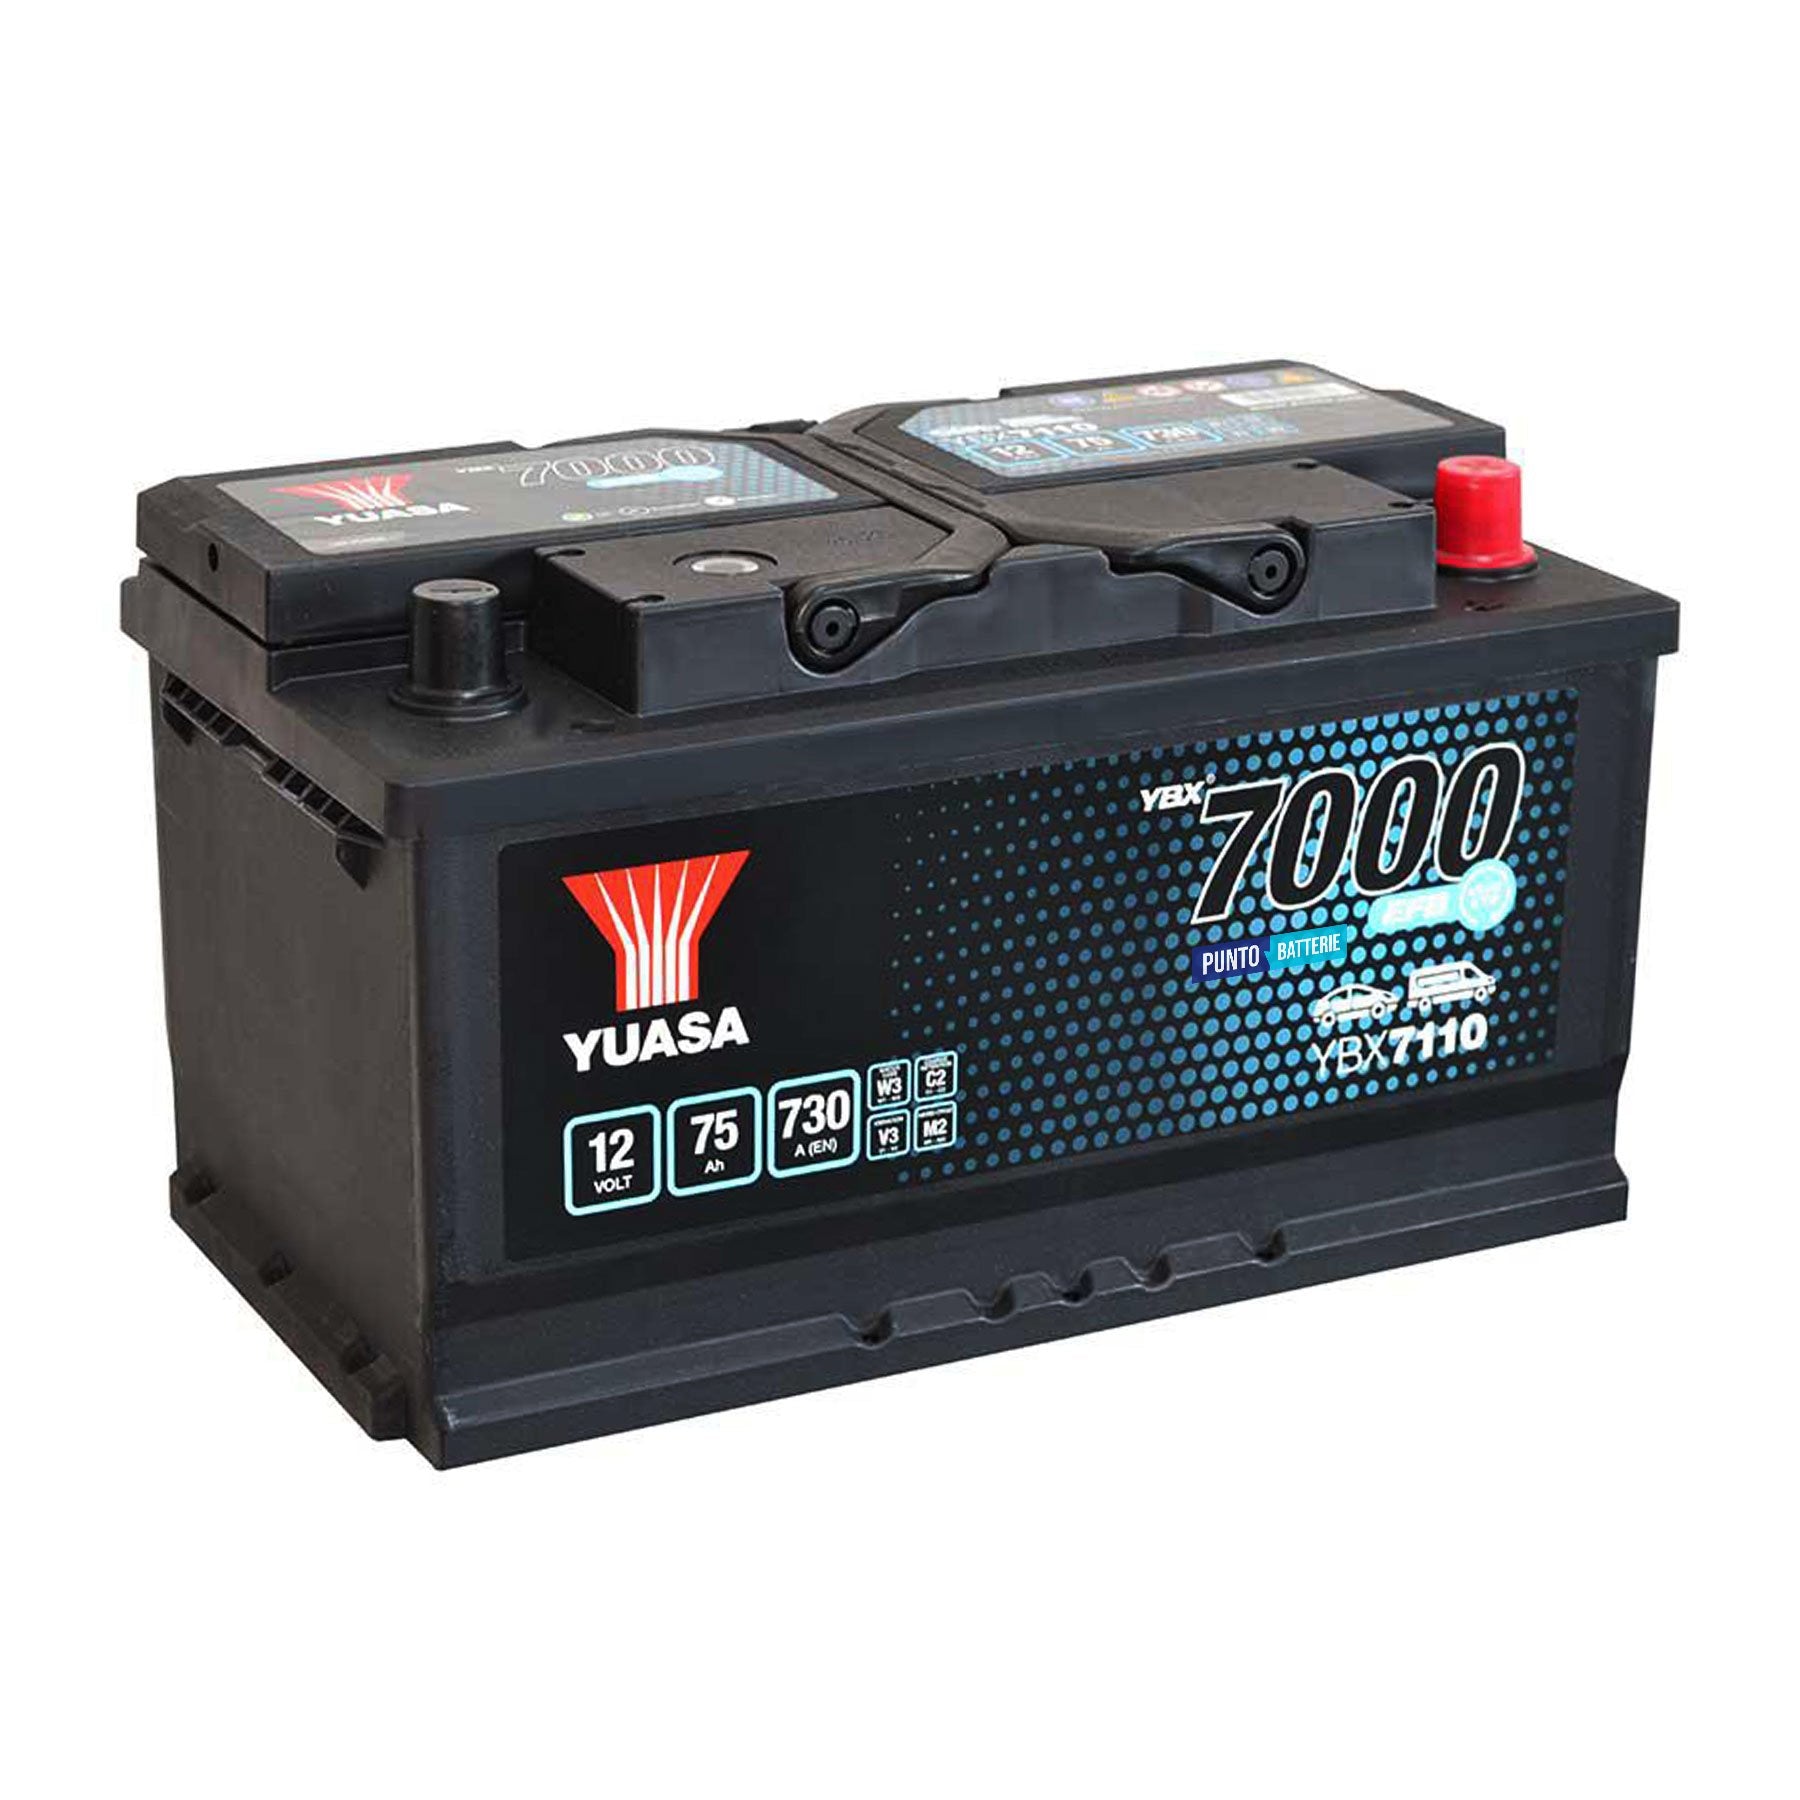 Batteria originale Yuasa YBX7000 YBX7110, dimensioni 315 x 175 x 175, polo positivo a destra, 12 volt, 75 amperora, 730 ampere, EFB. Batteria per auto e veicoli leggeri con start e stop.